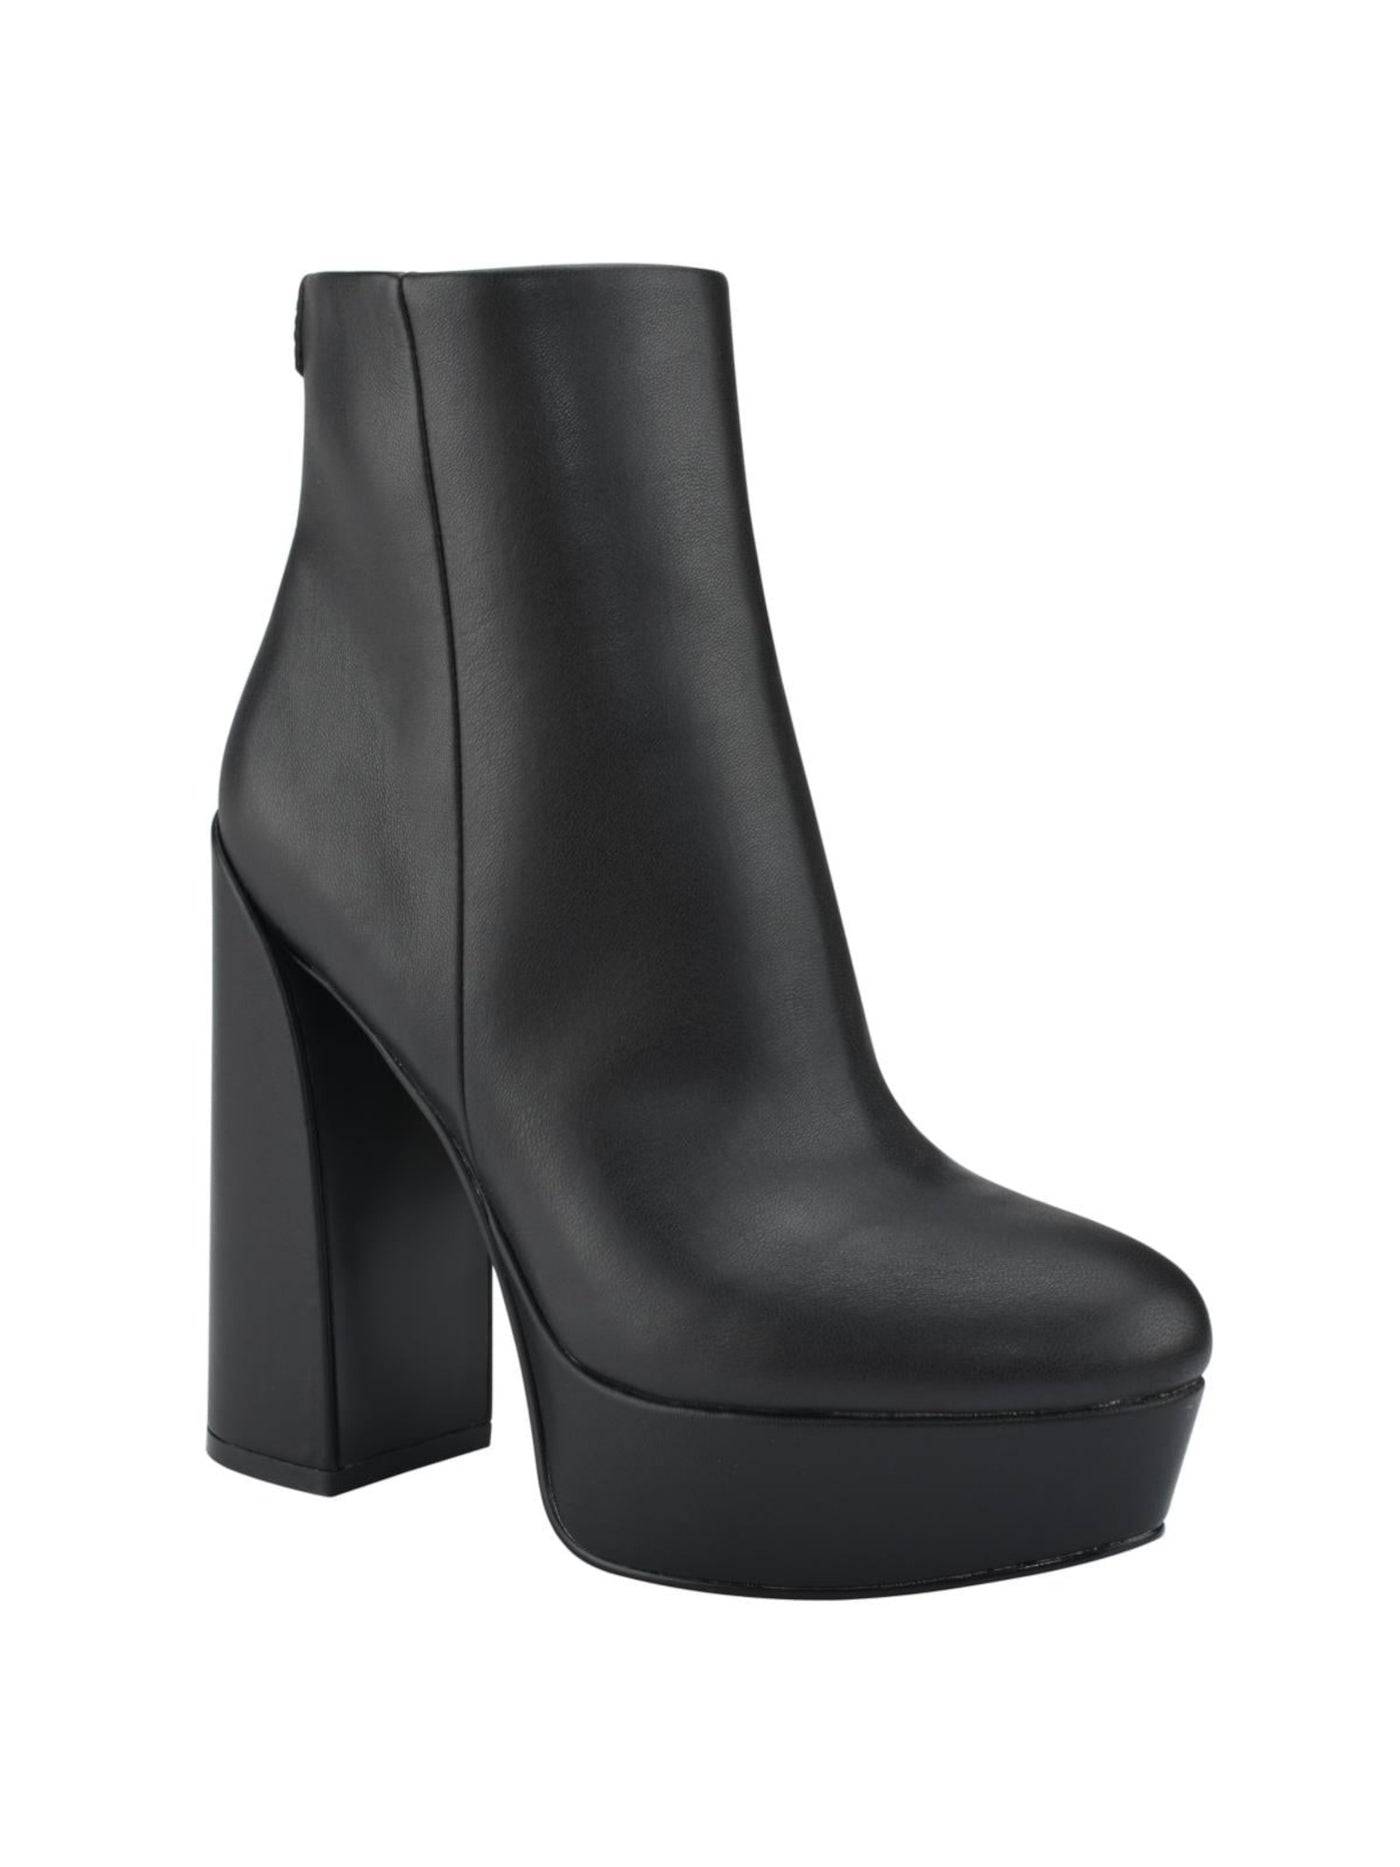 GUESS Womens Black Comfort Crafty Round Toe Block Heel Zip-Up Booties 7.5 M